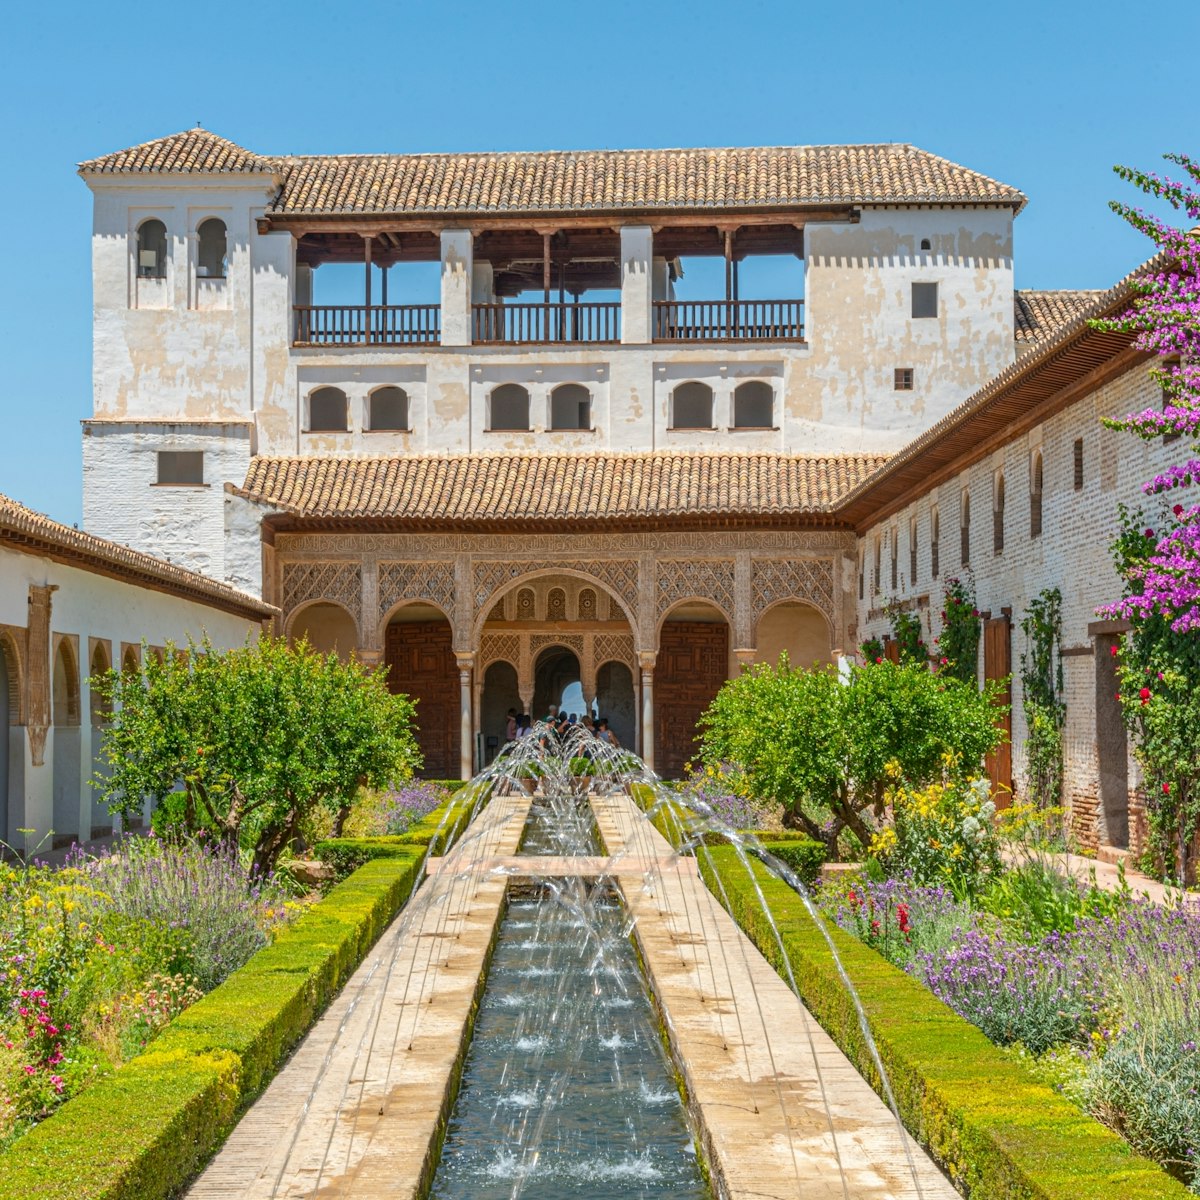 Generalife Palace in Granada, Spain.